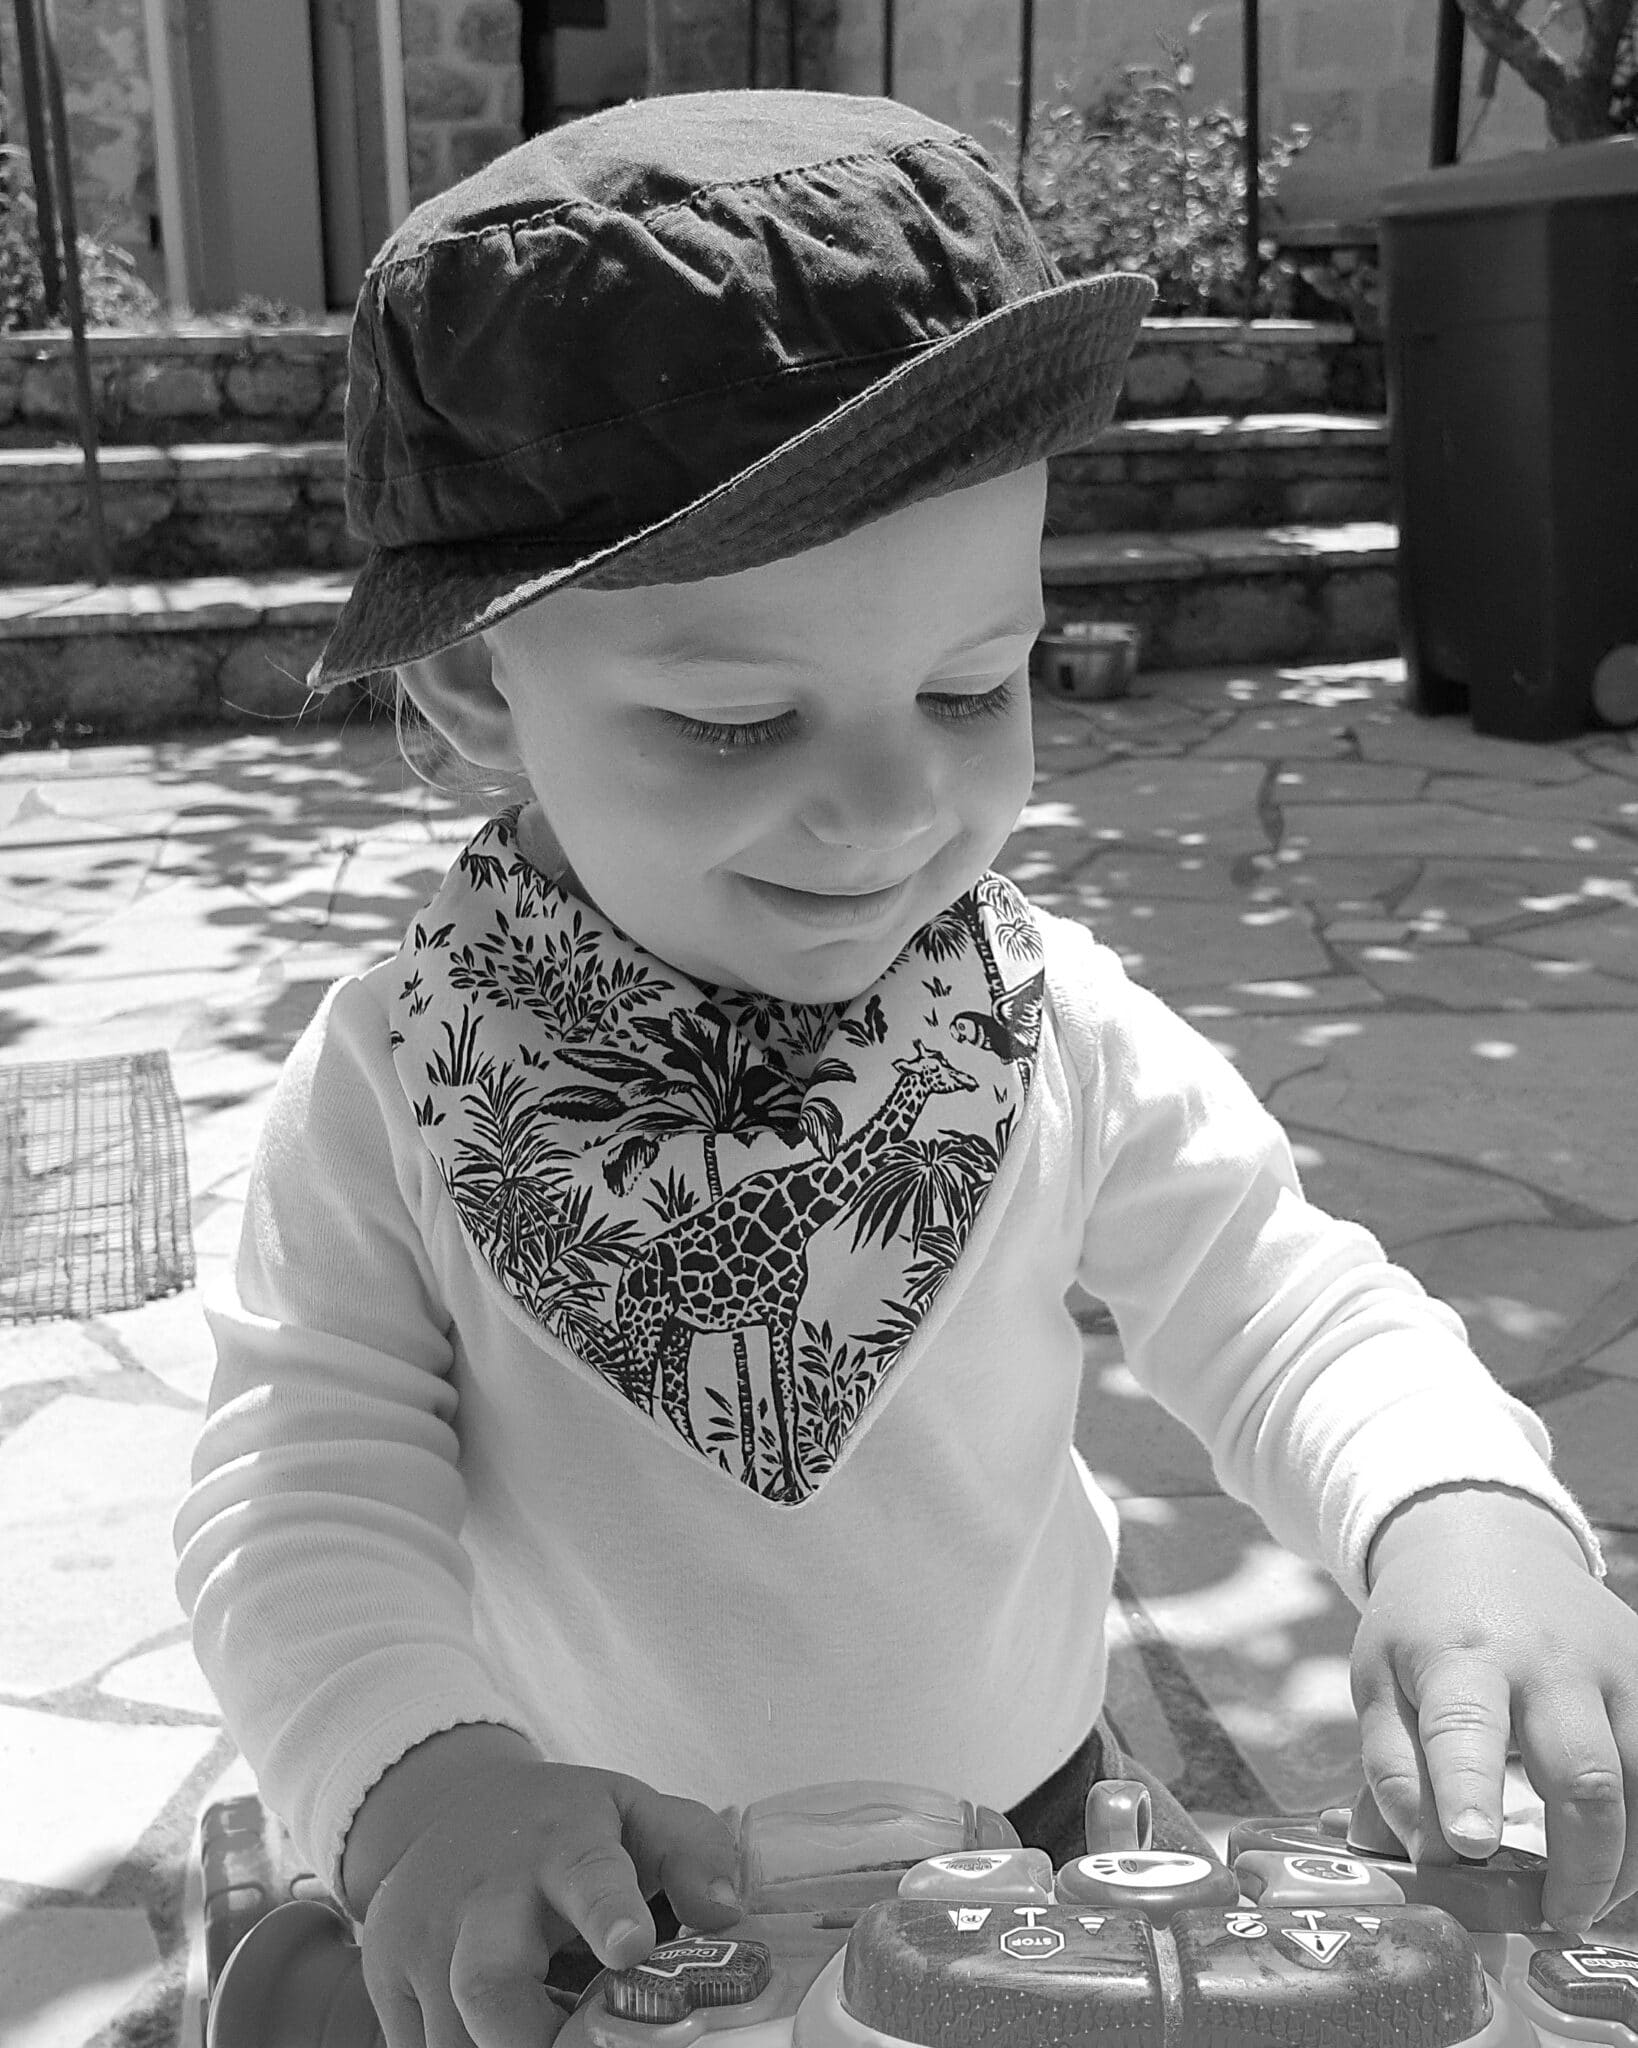 Bavoir bandana à noeud pour bébé garçon